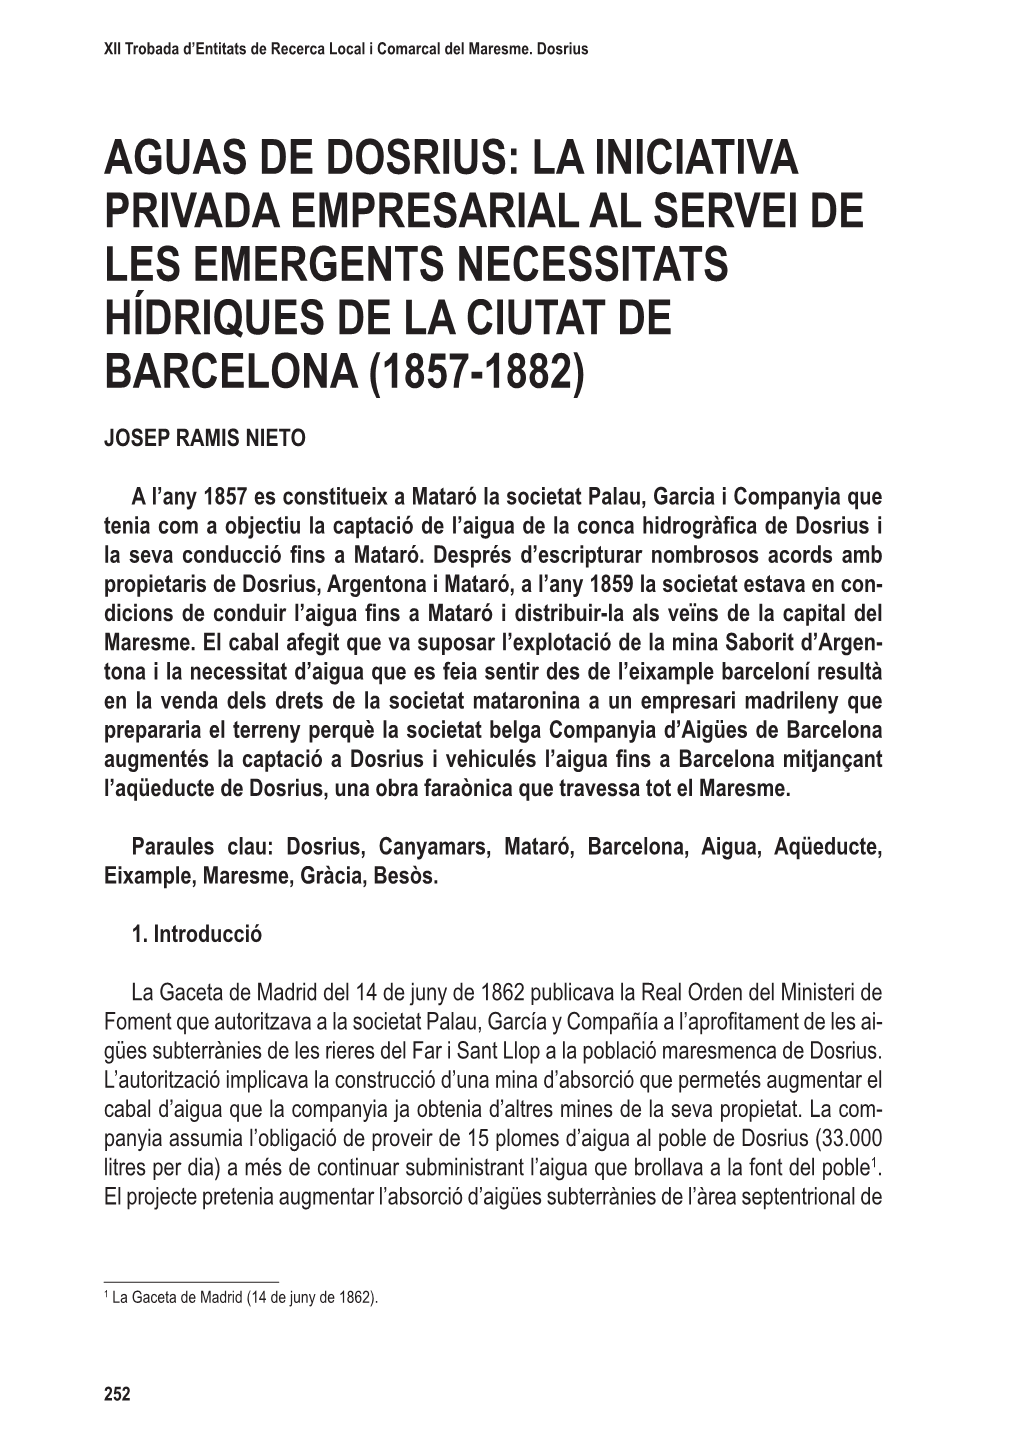 Aguas De Dosrius: La Iniciativa Privada Empresarial Al Servei De Les Emergents Necessitats Hídriques De La Ciutat De Barcelona (1857-1882)